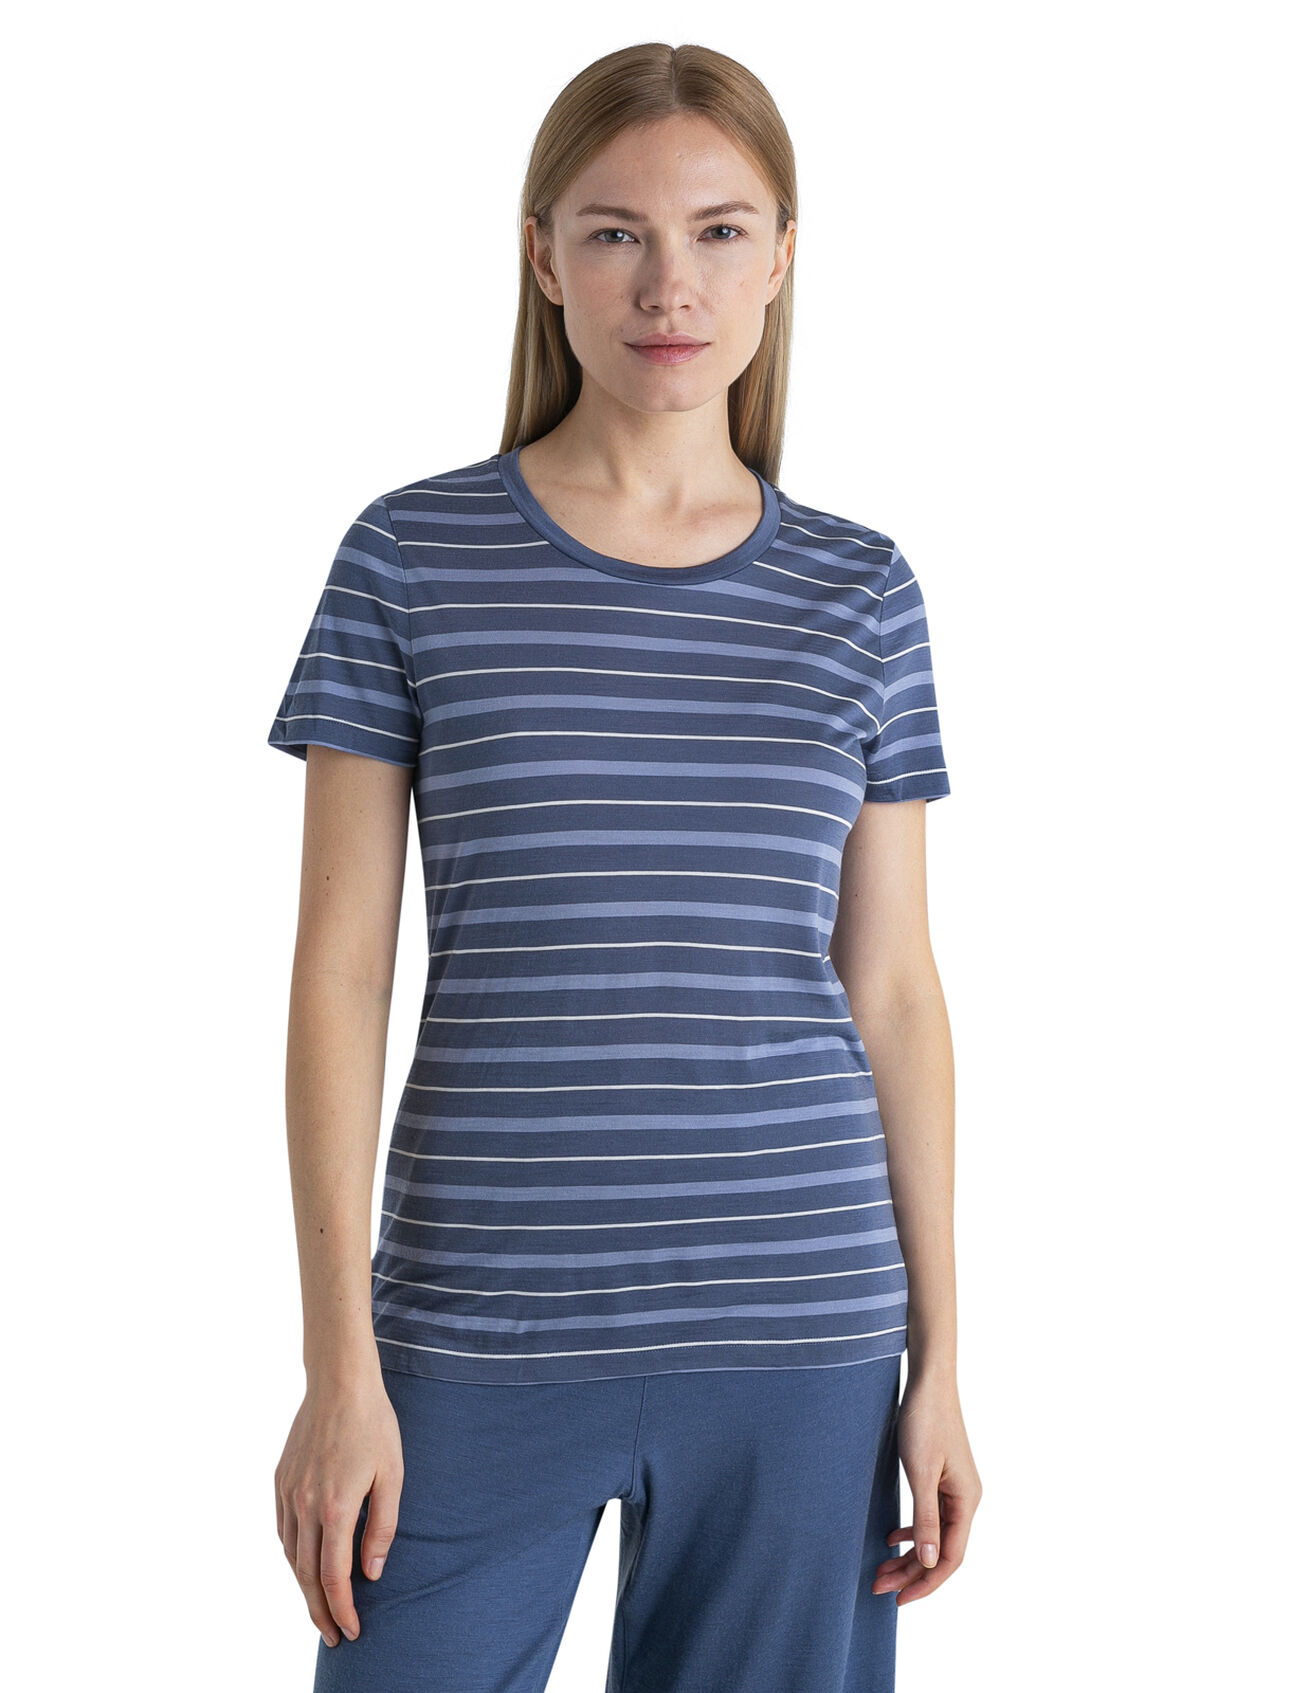 Merinomix Wave T-Shirt Stripe Damen Ein leichtgewichtiges Merino-Mix T-Shirt im klassischen Stil, das für warmes Wetter perfekt ist, das kurzärmlige Wave T-Shirt Stripe besteht aus unserem atmungsaktiven, völlig natürlichen Cool-Lite™ Jersey.